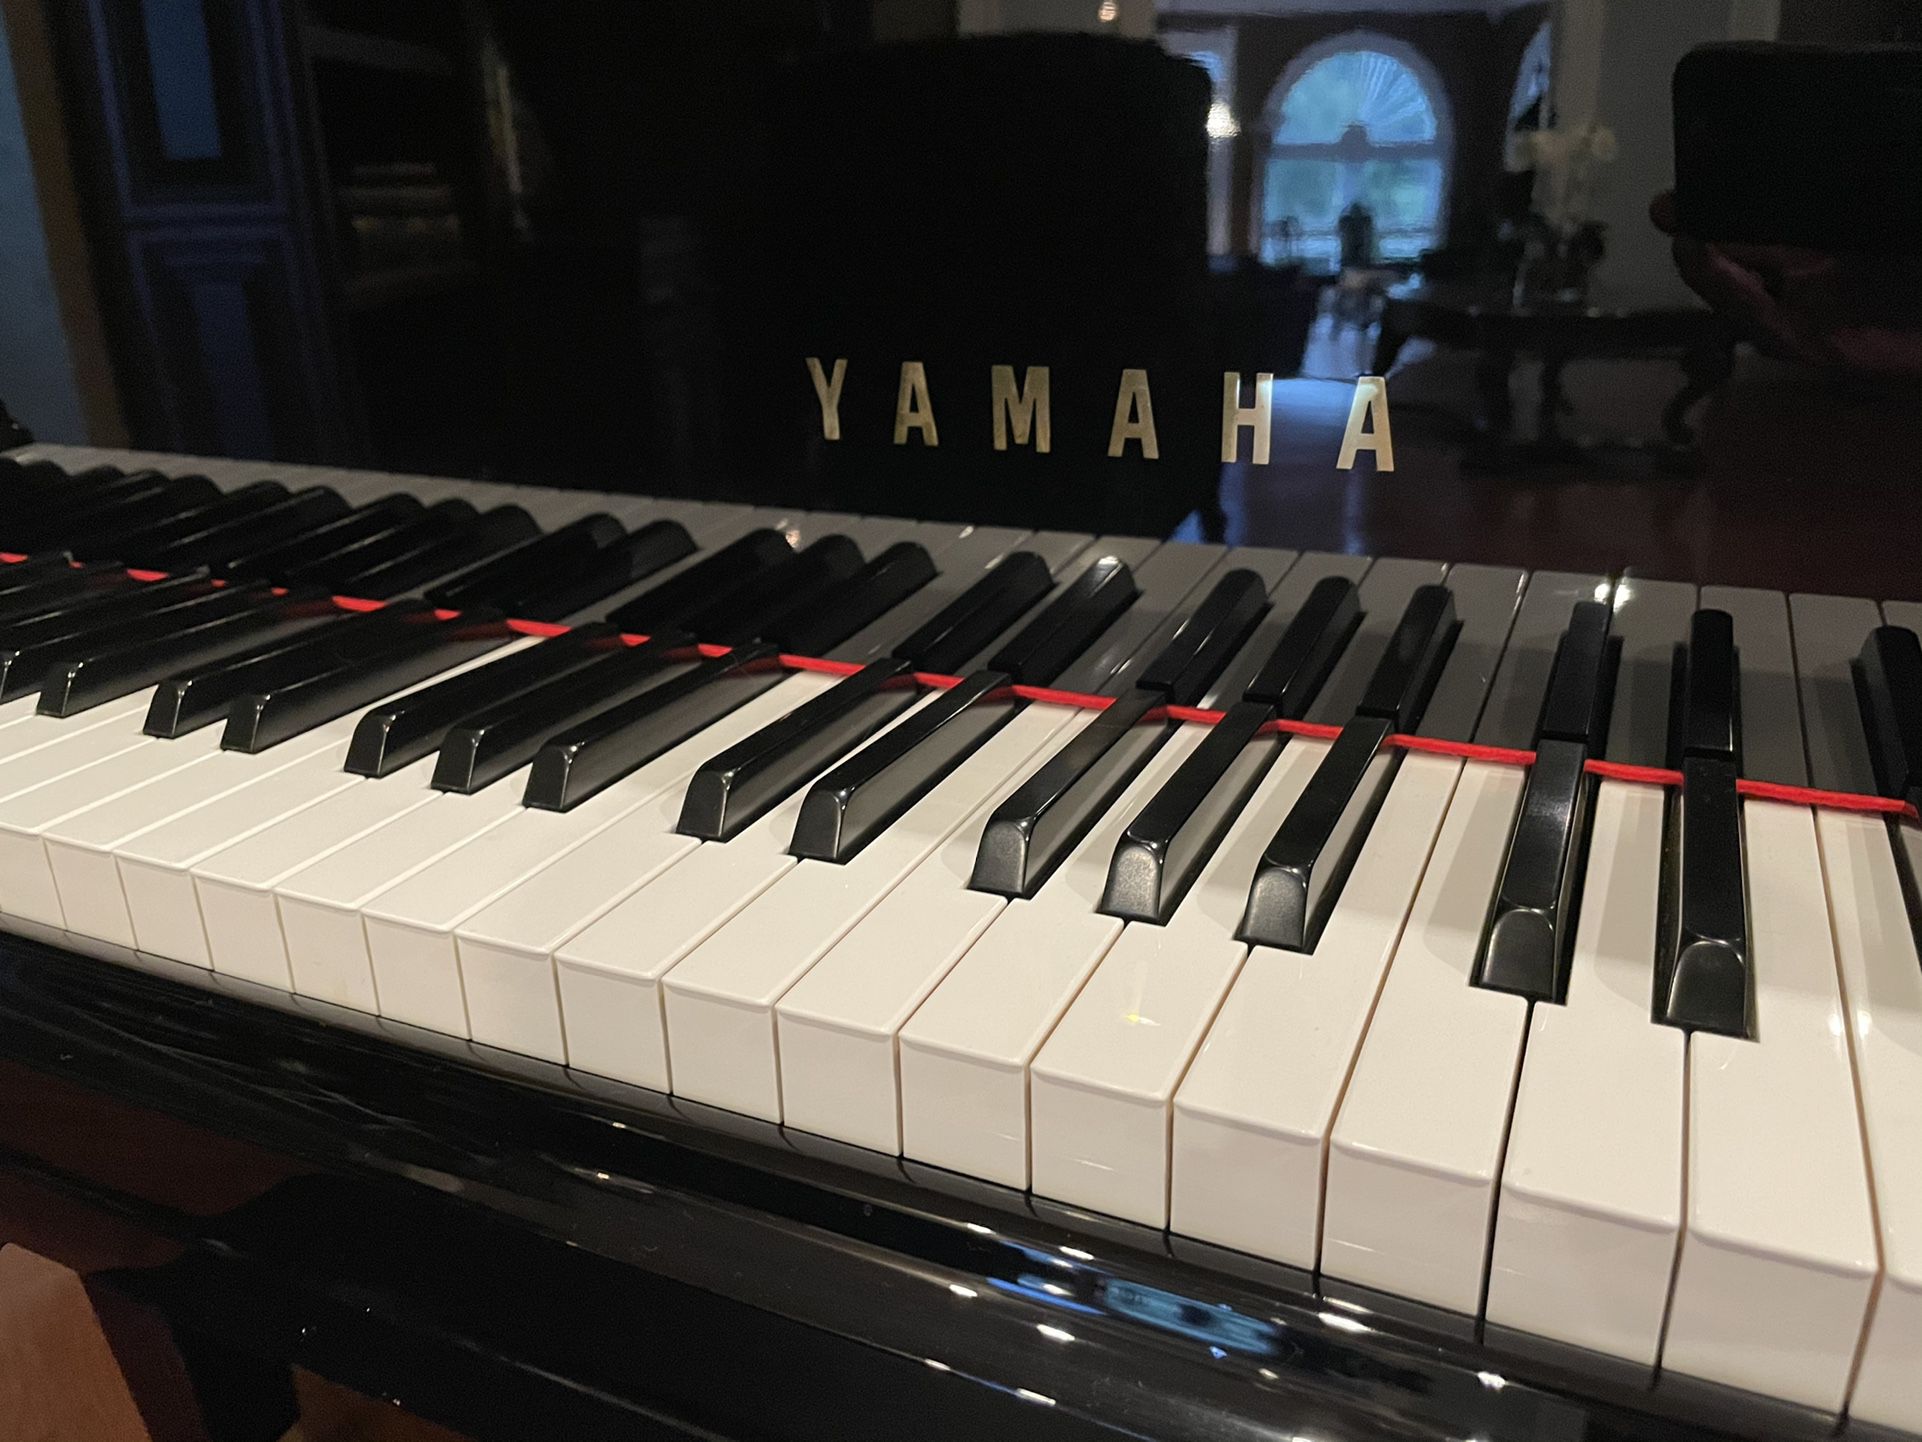 Yamaha Baby Grand Piano - With Auto Play